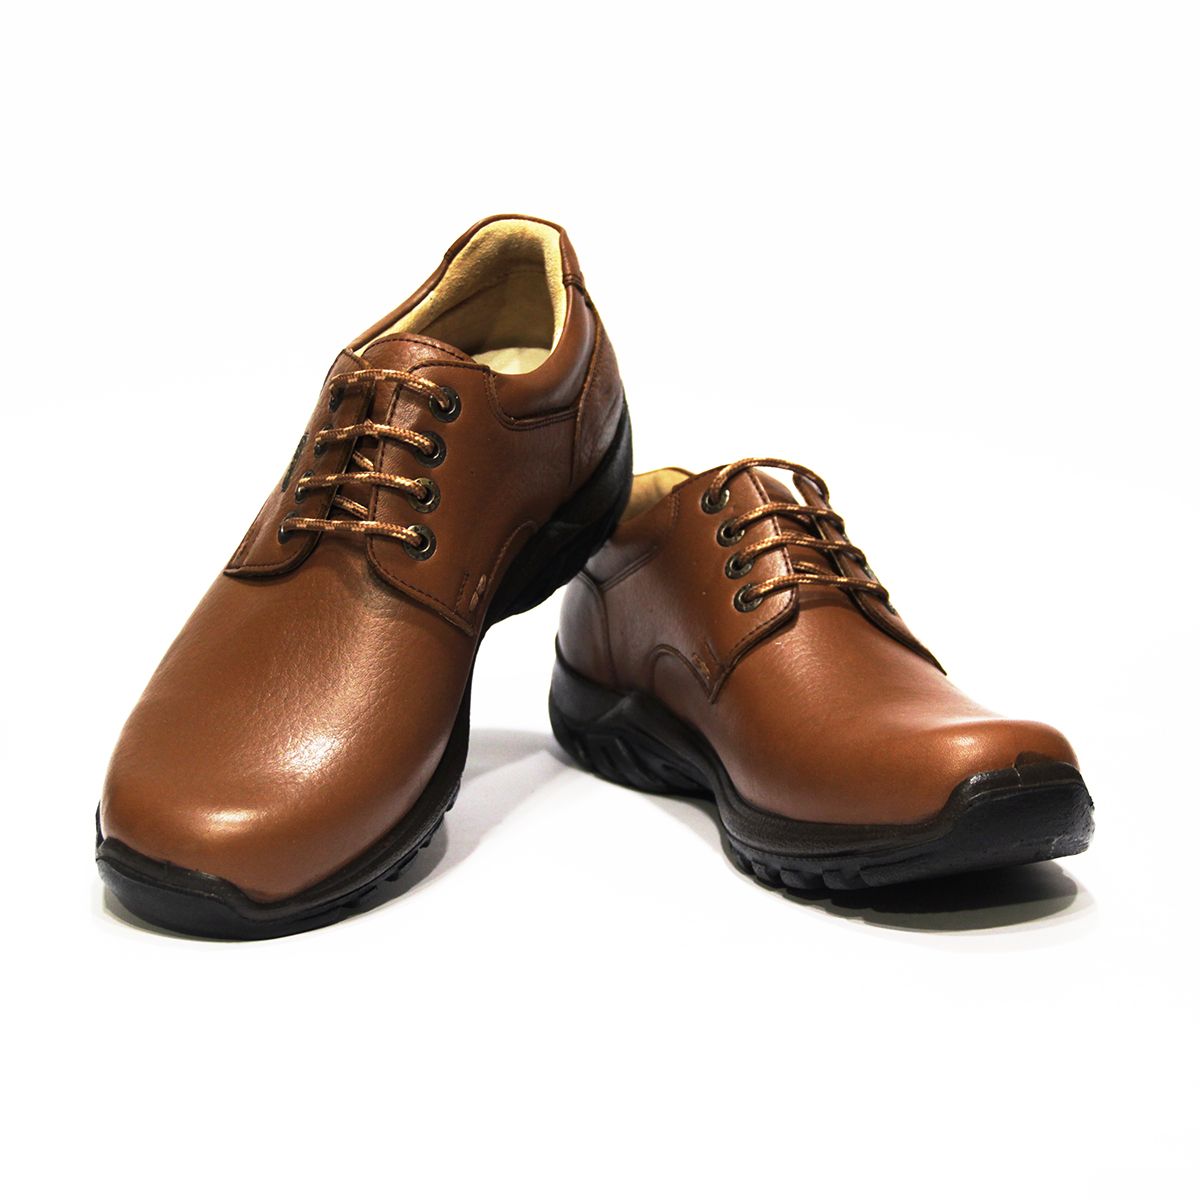 کفش روزمره مردانه فرزین کد cbw012 رنگ گردویی -  - 3